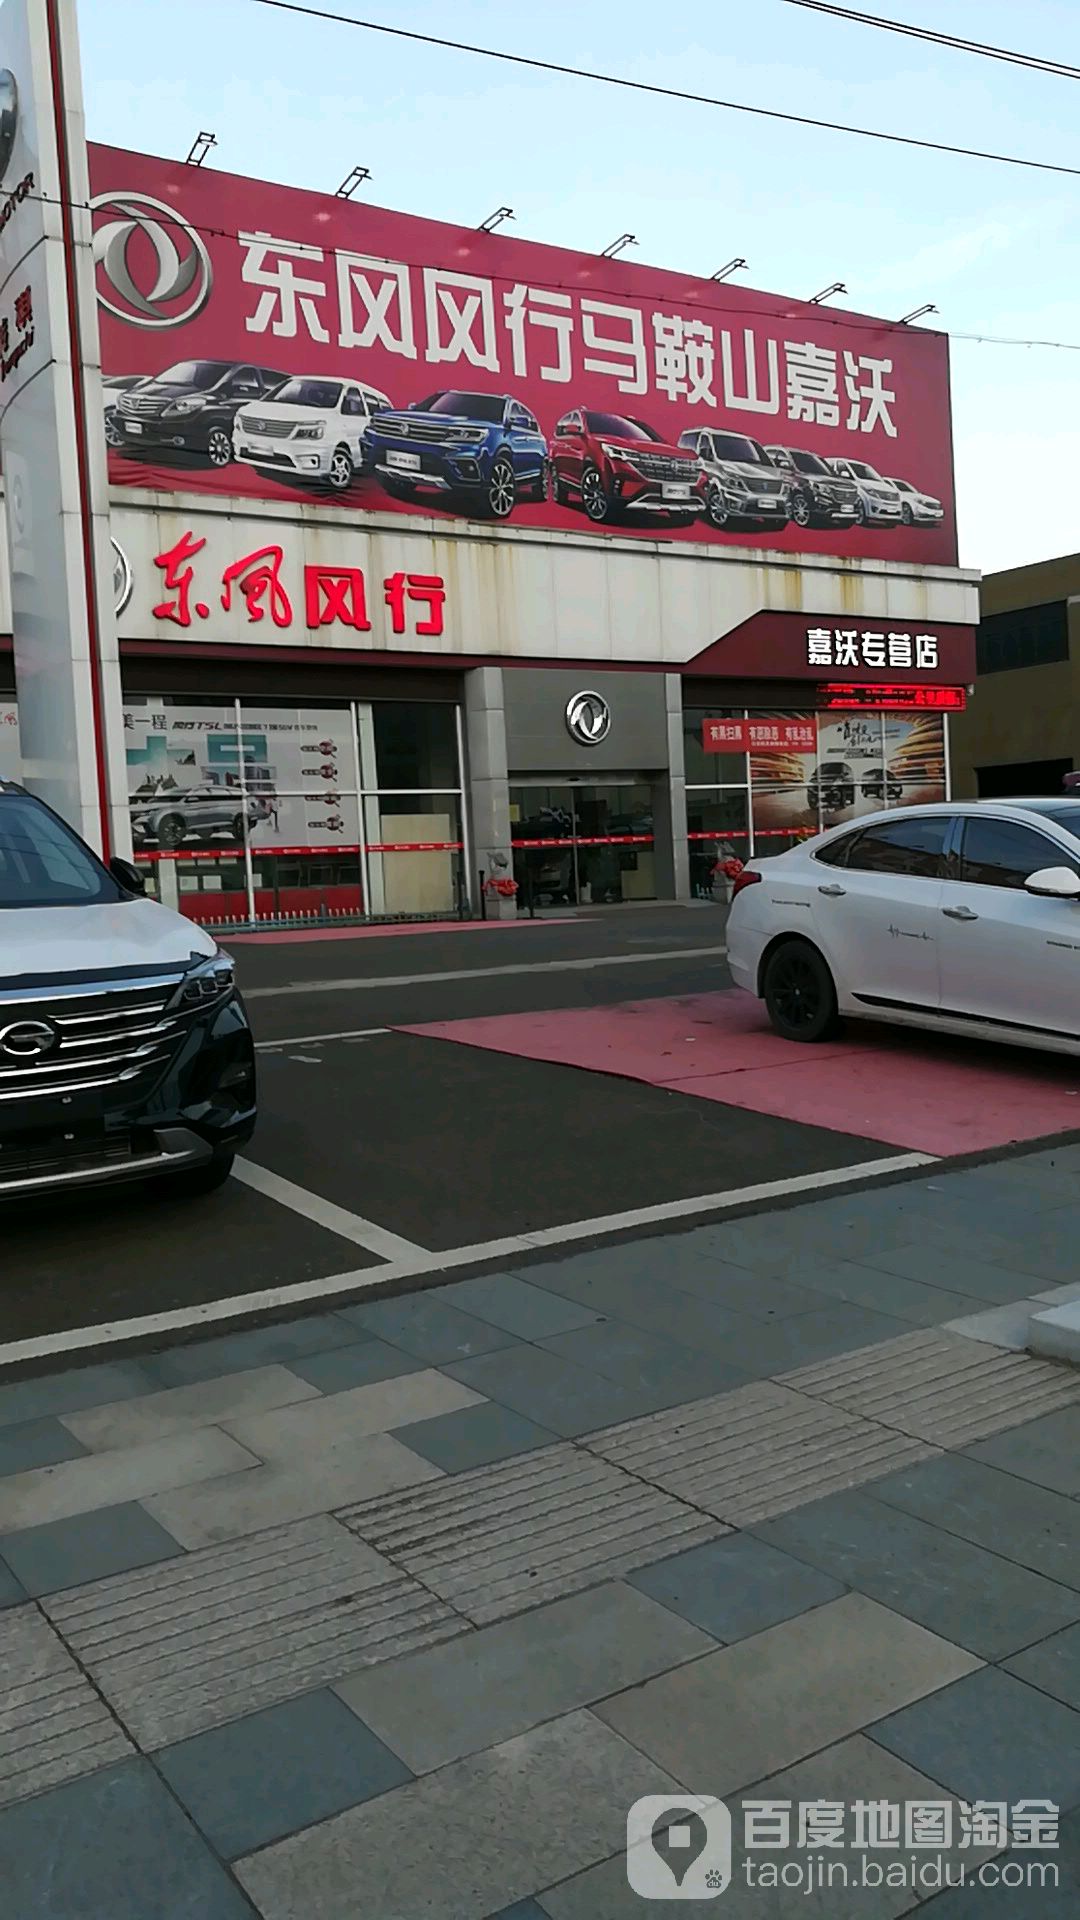 安徽嘉沃汽车销售服务有限公司